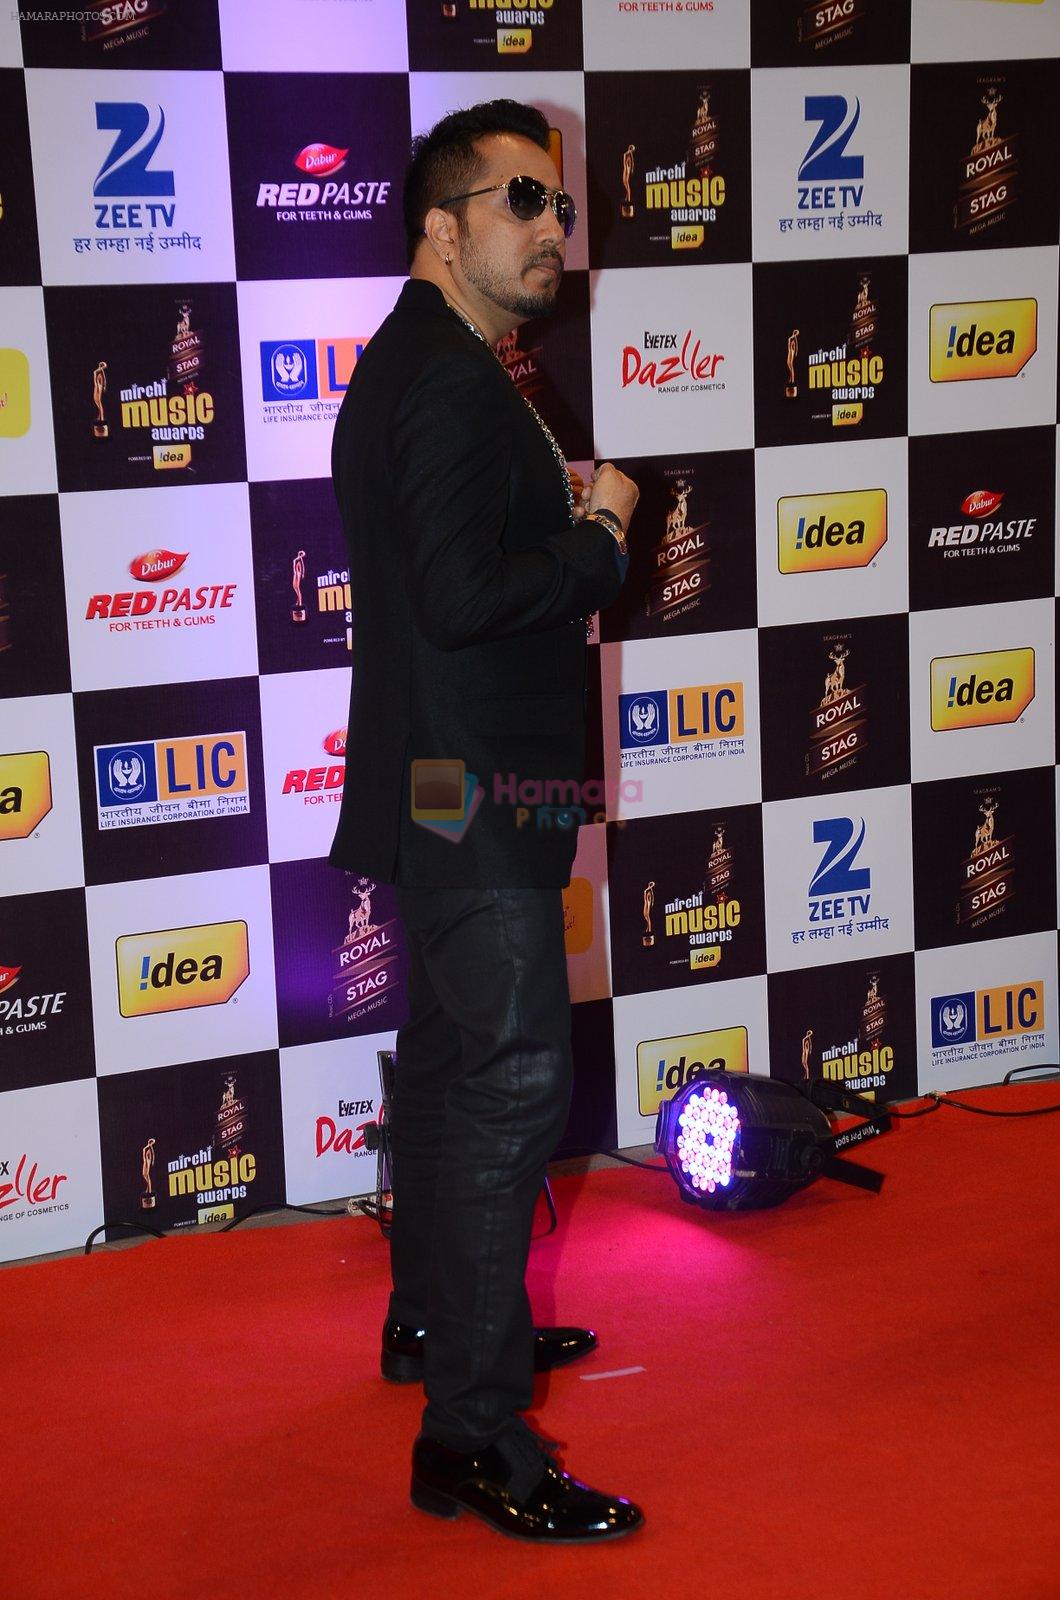 Mika Singh at radio mirchi awards red carpet in Mumbai on 29th Feb 2016